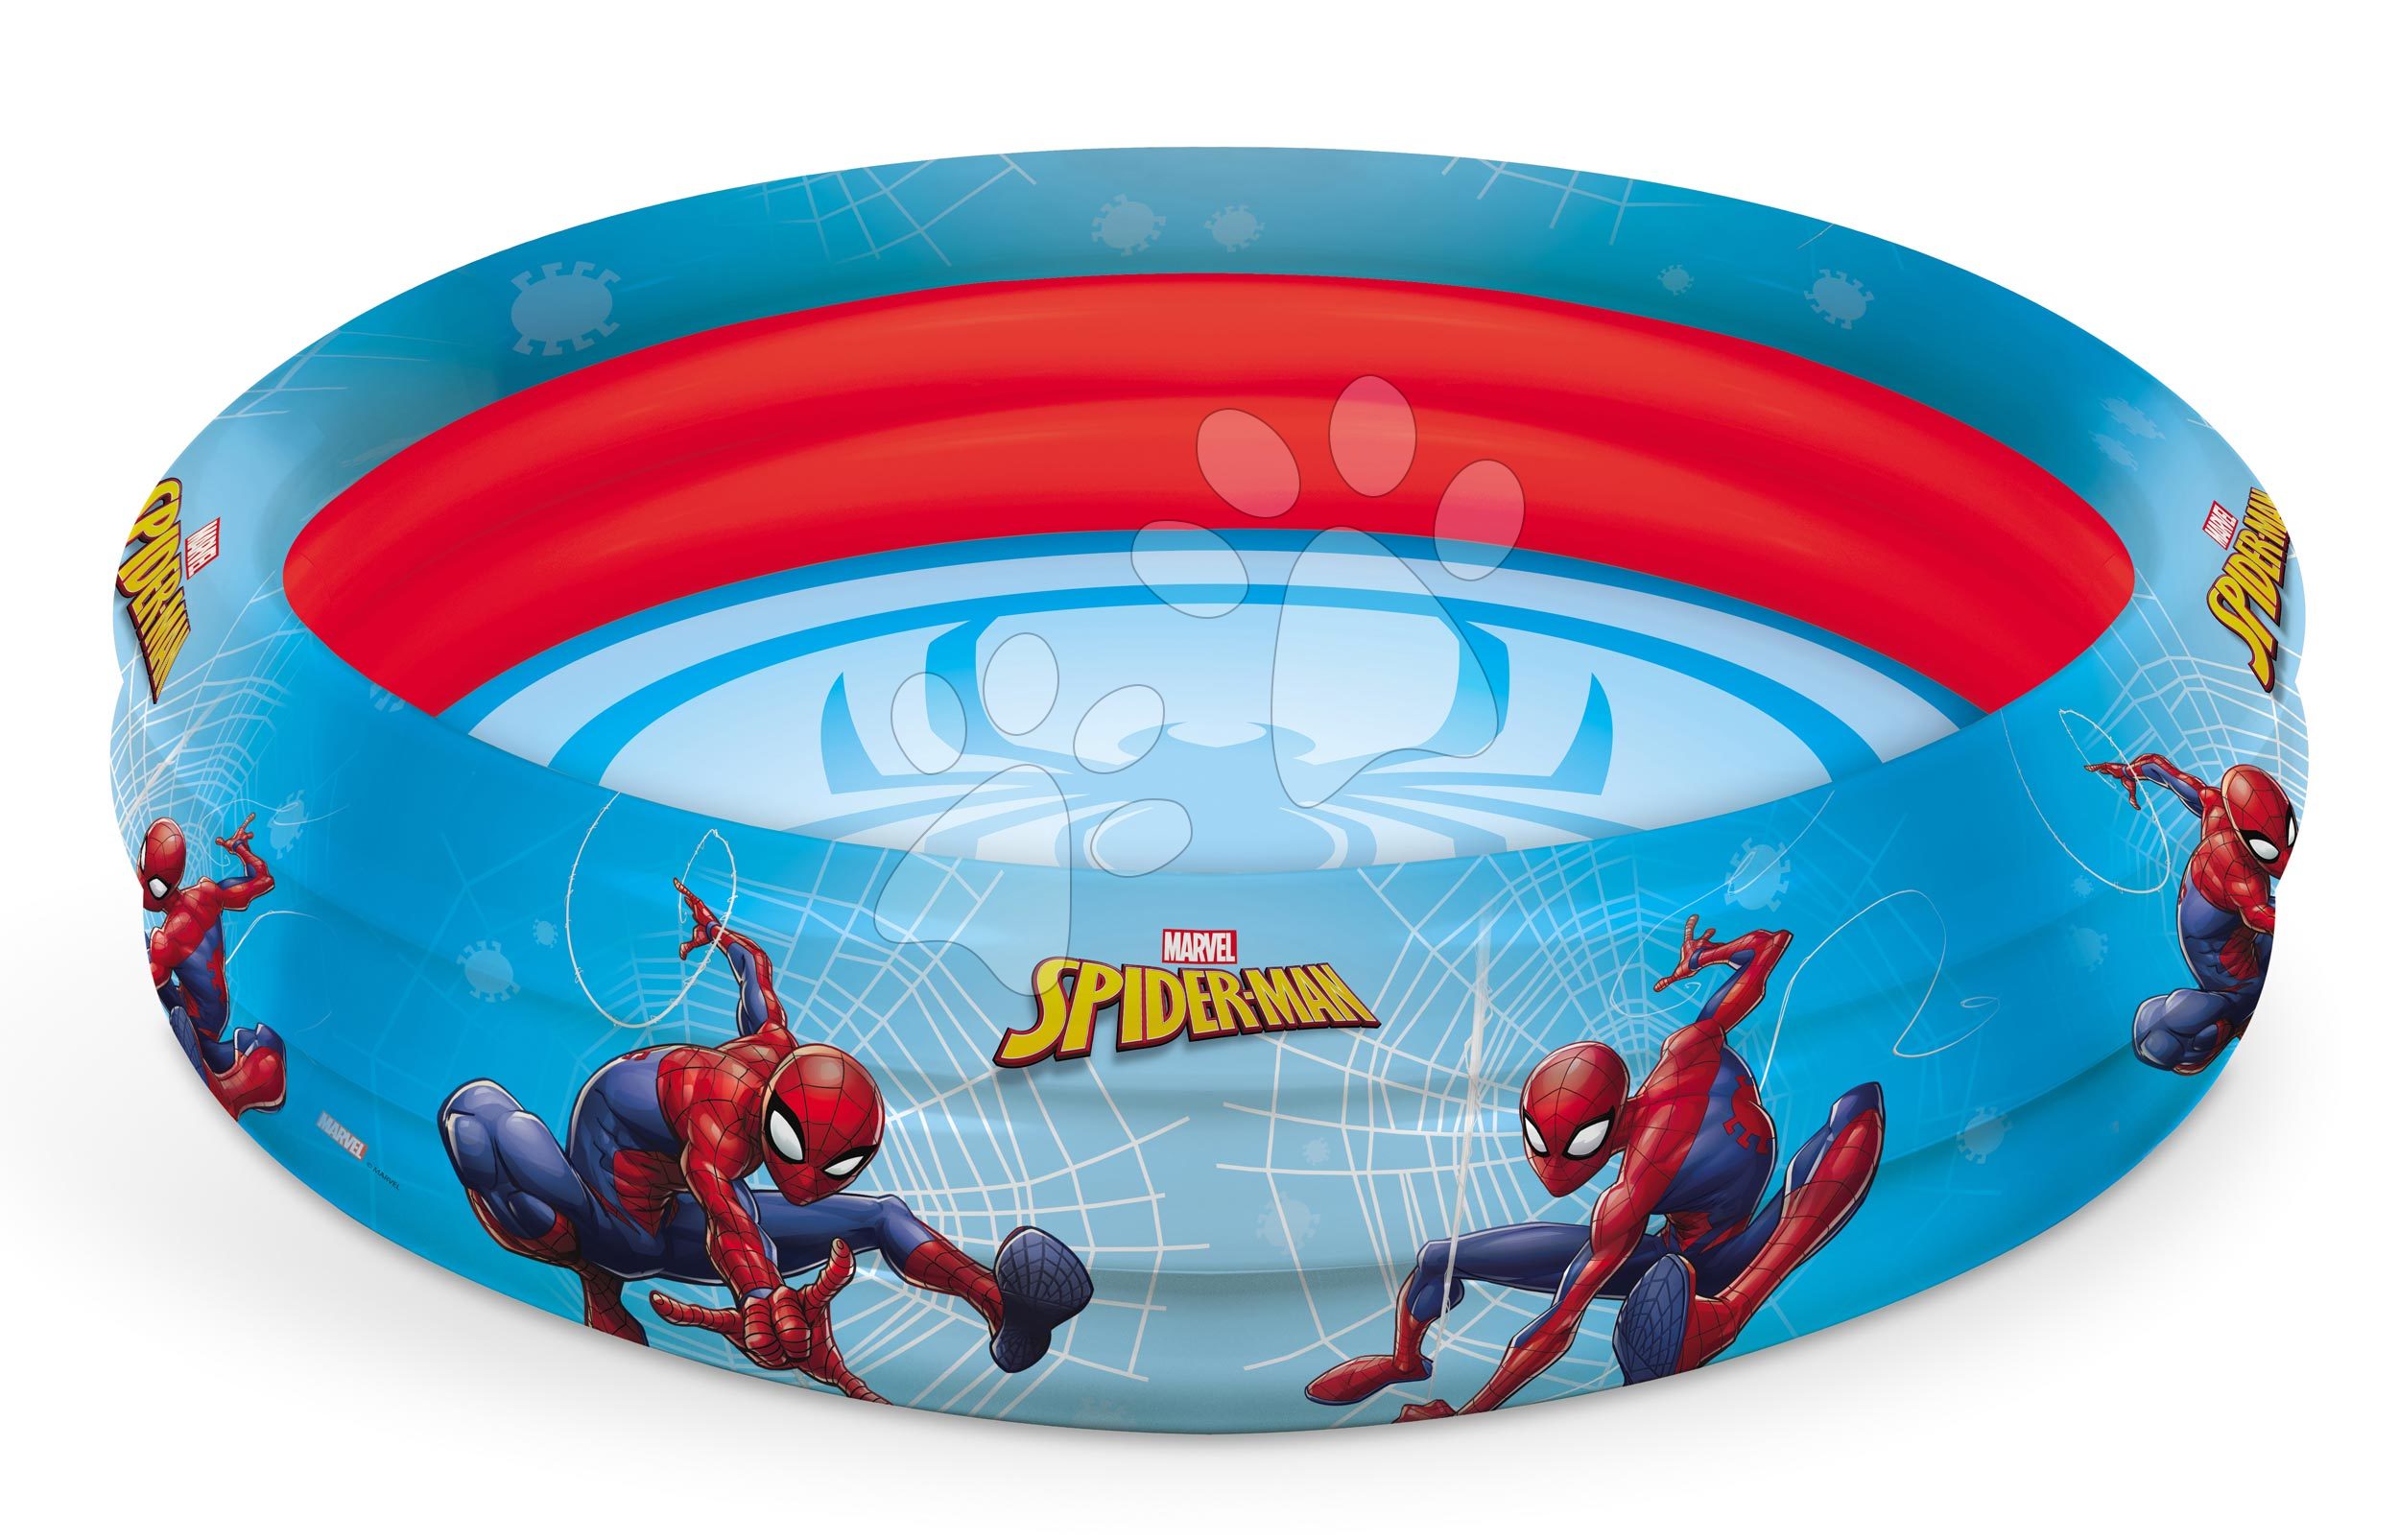 Mondo trojkomorový nafukovací bazén Spiderman 100 cm 16345 červený